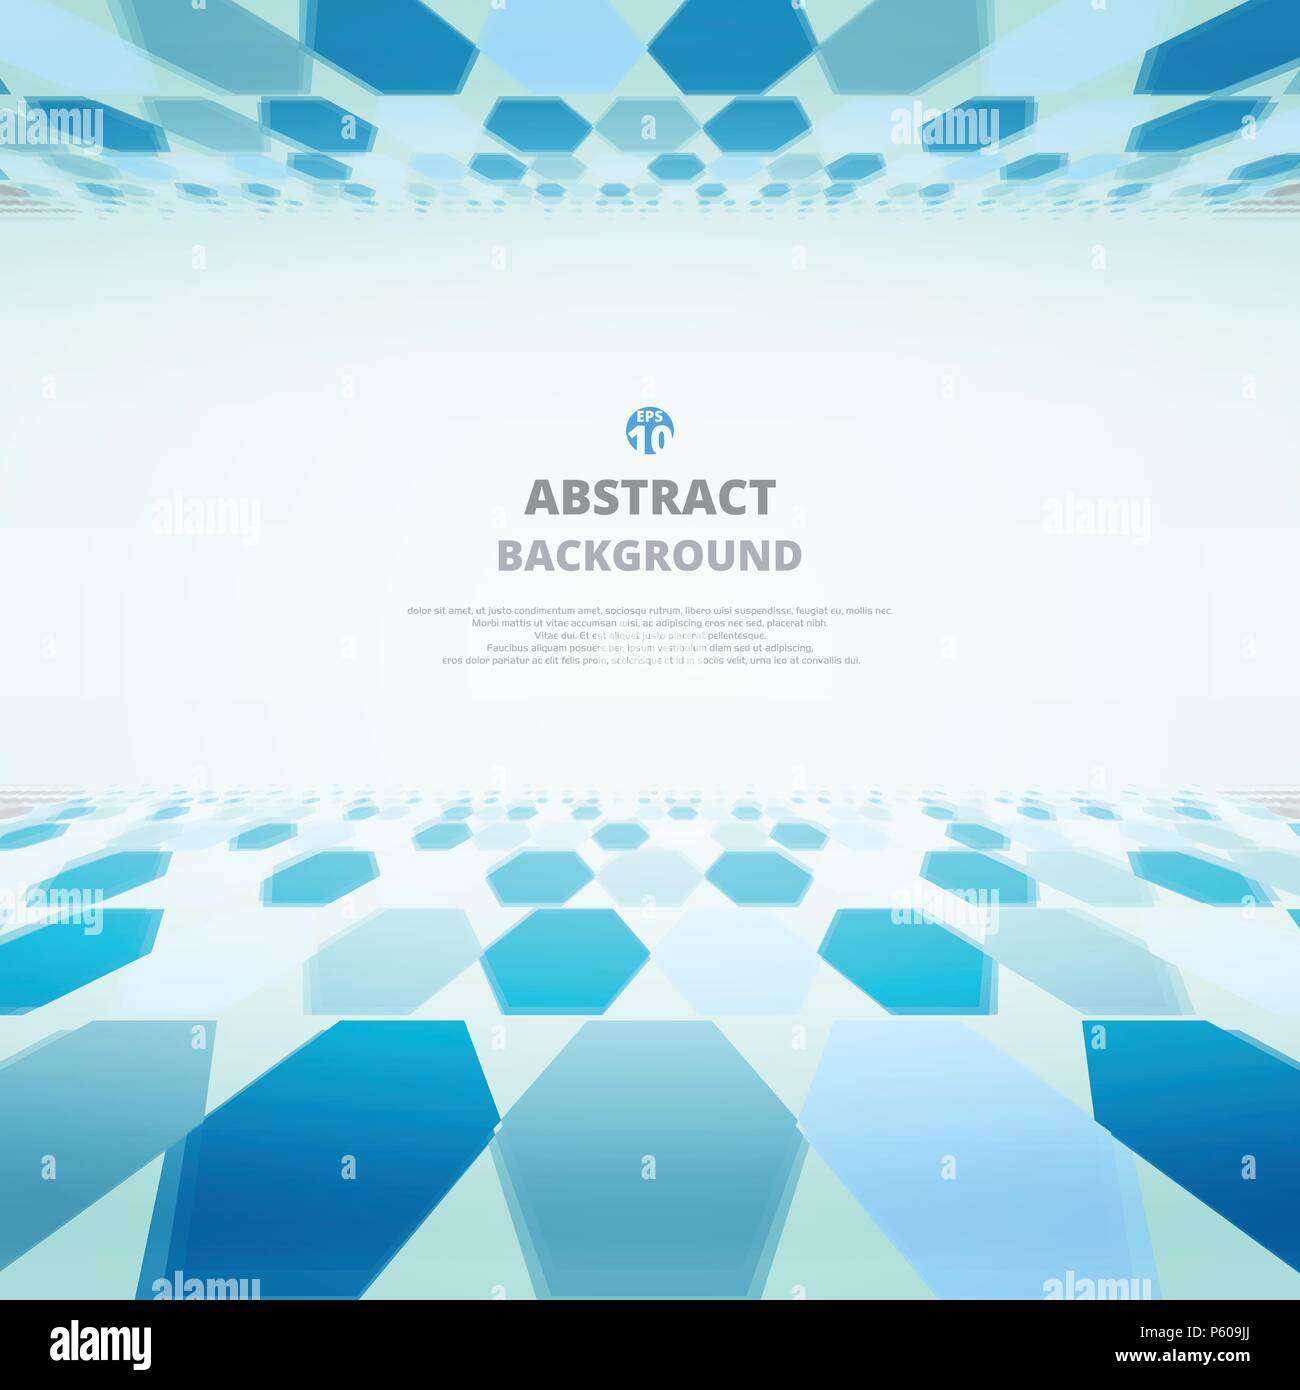 Kunst des blauen Moleküle Zusammenfassung Hintergrund für die Präsentation. Abbildung: Eps 10. Stock Vektor